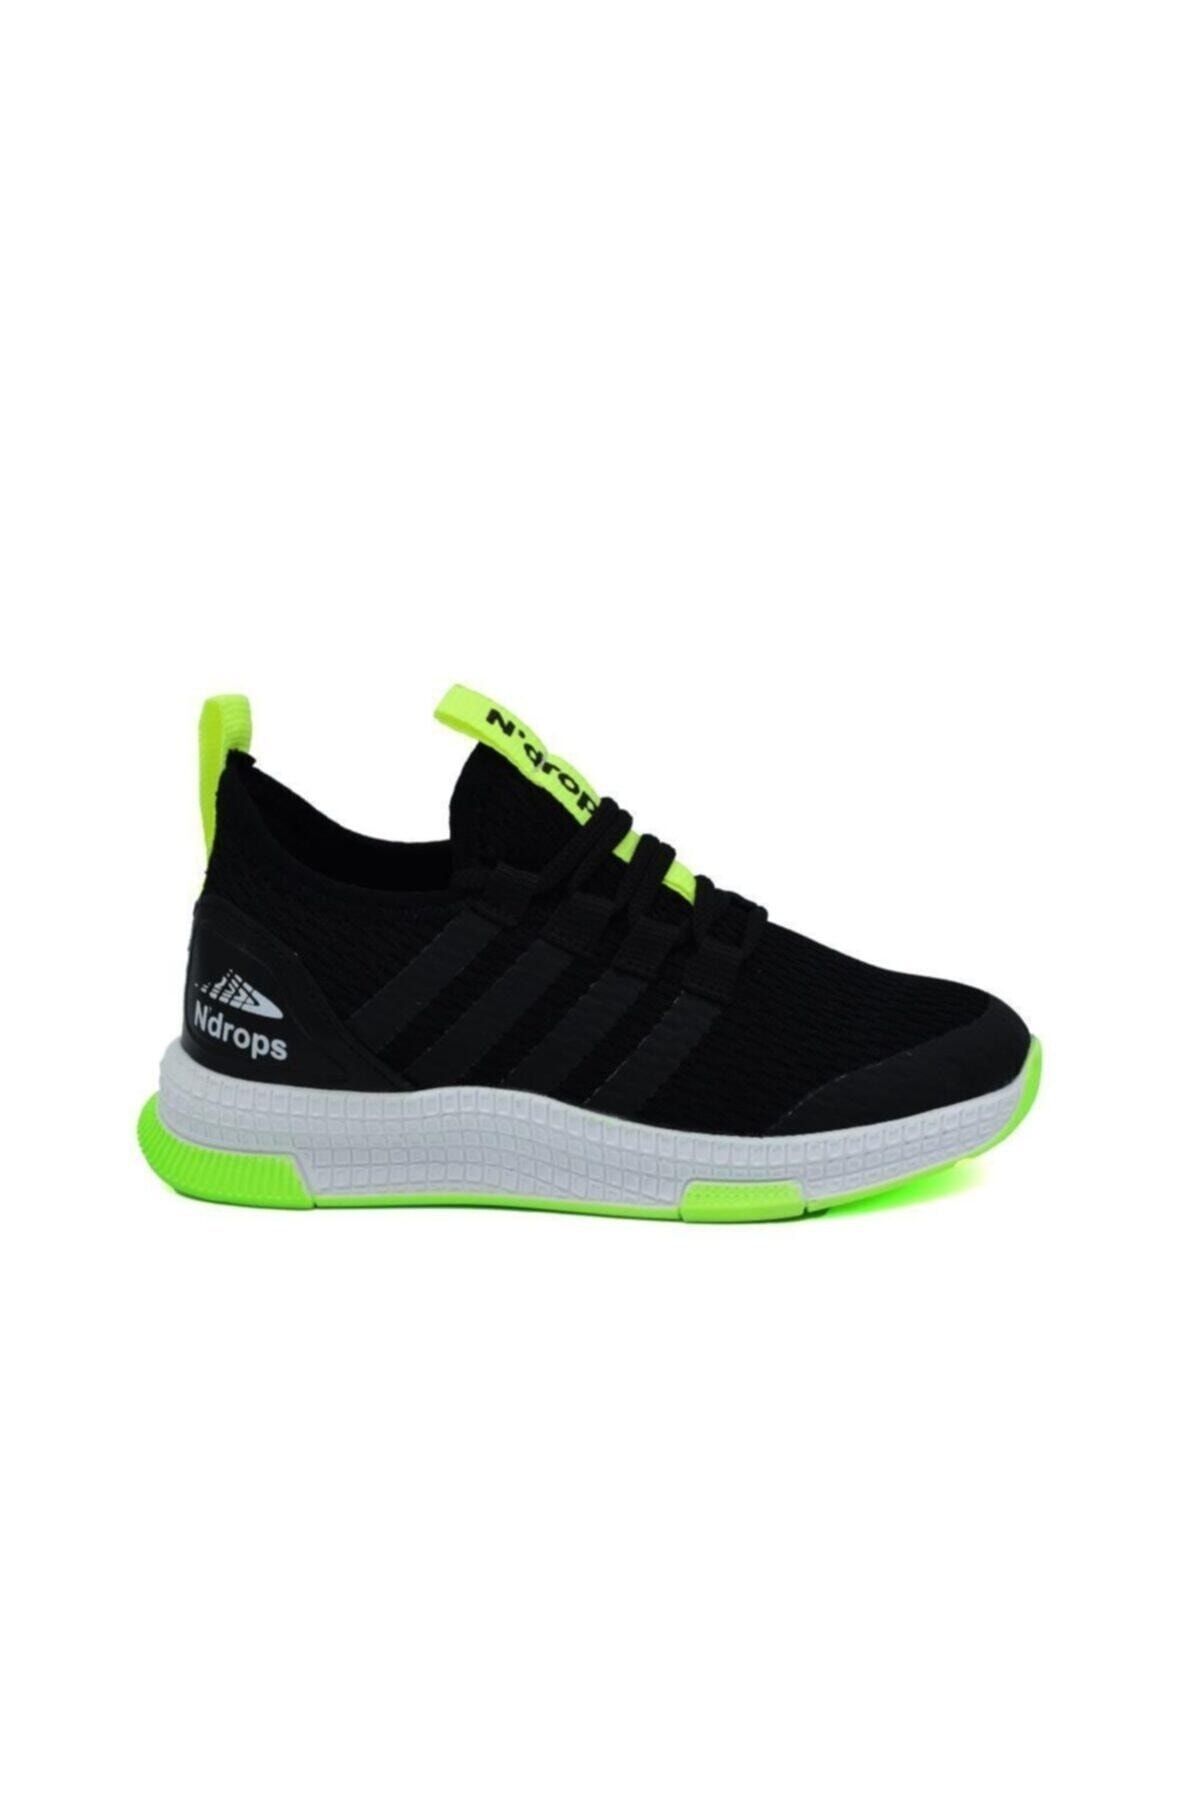 N Drops Siyah - Lisanslı Markalar Unisex Çocuk Spor Ayakkabı